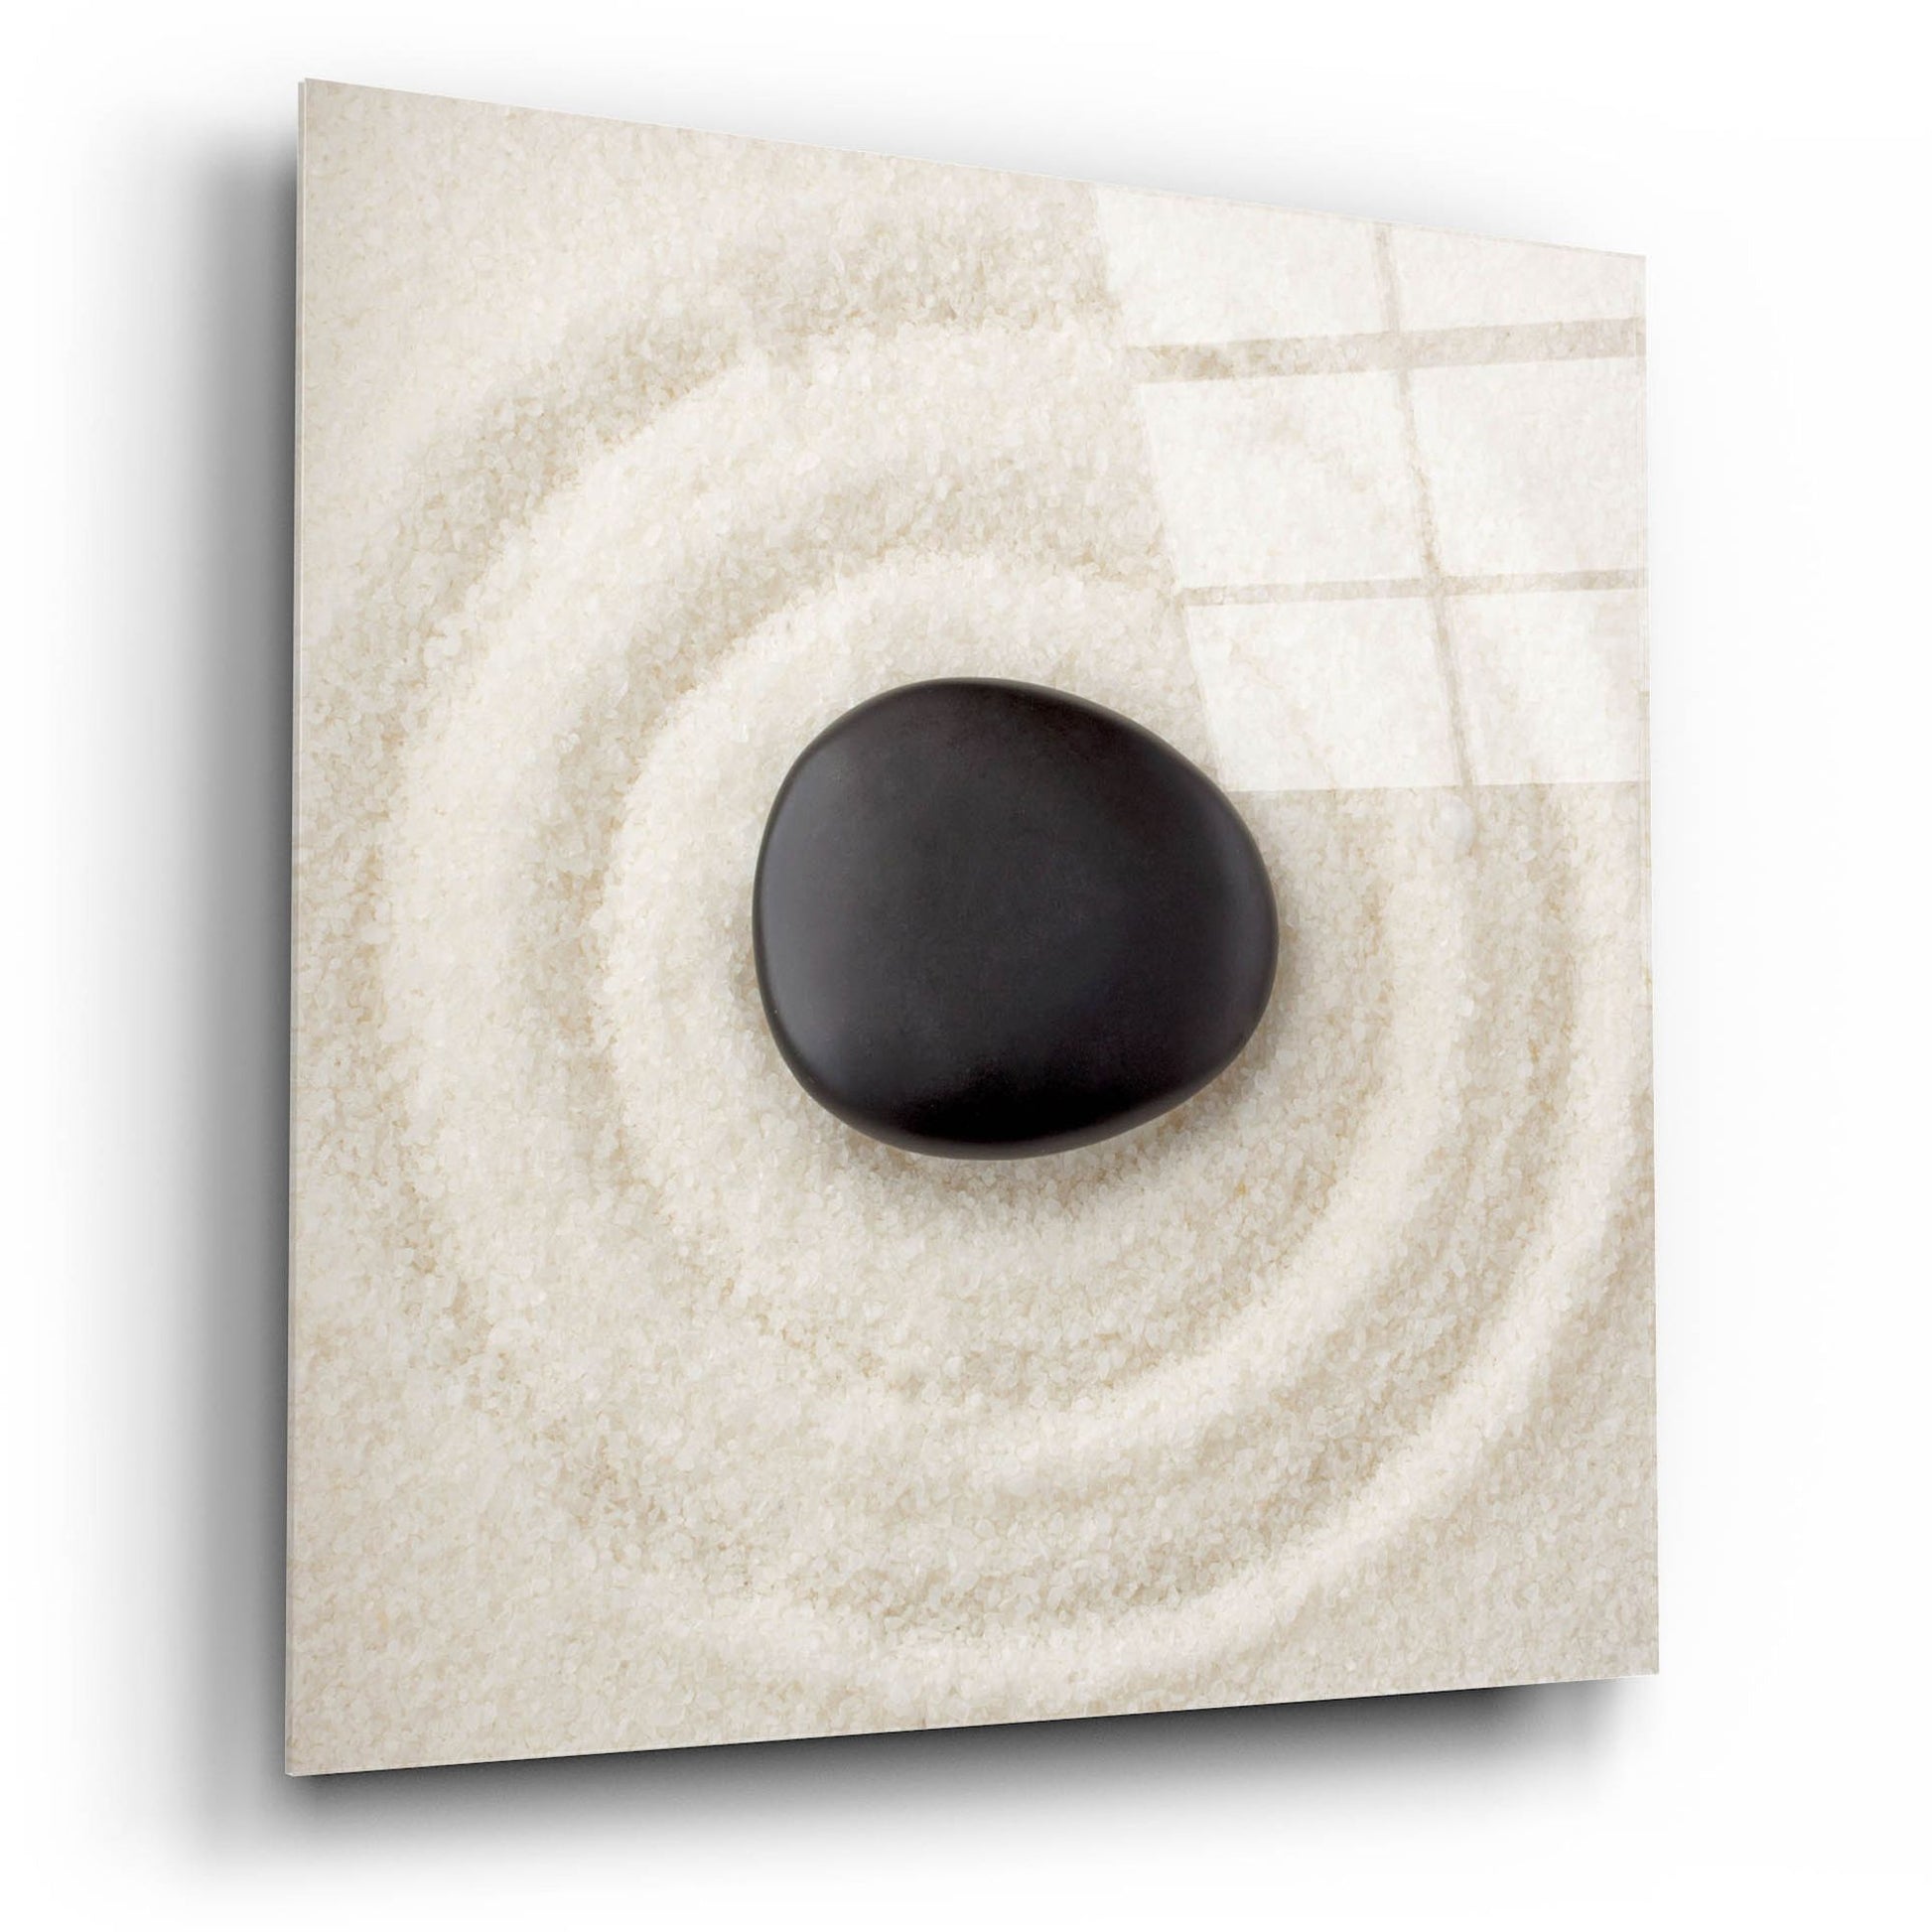 Epic Art 'Zen Pebble 1' by Photoinc Studio, Acrylic Glass Wall Art,12x12